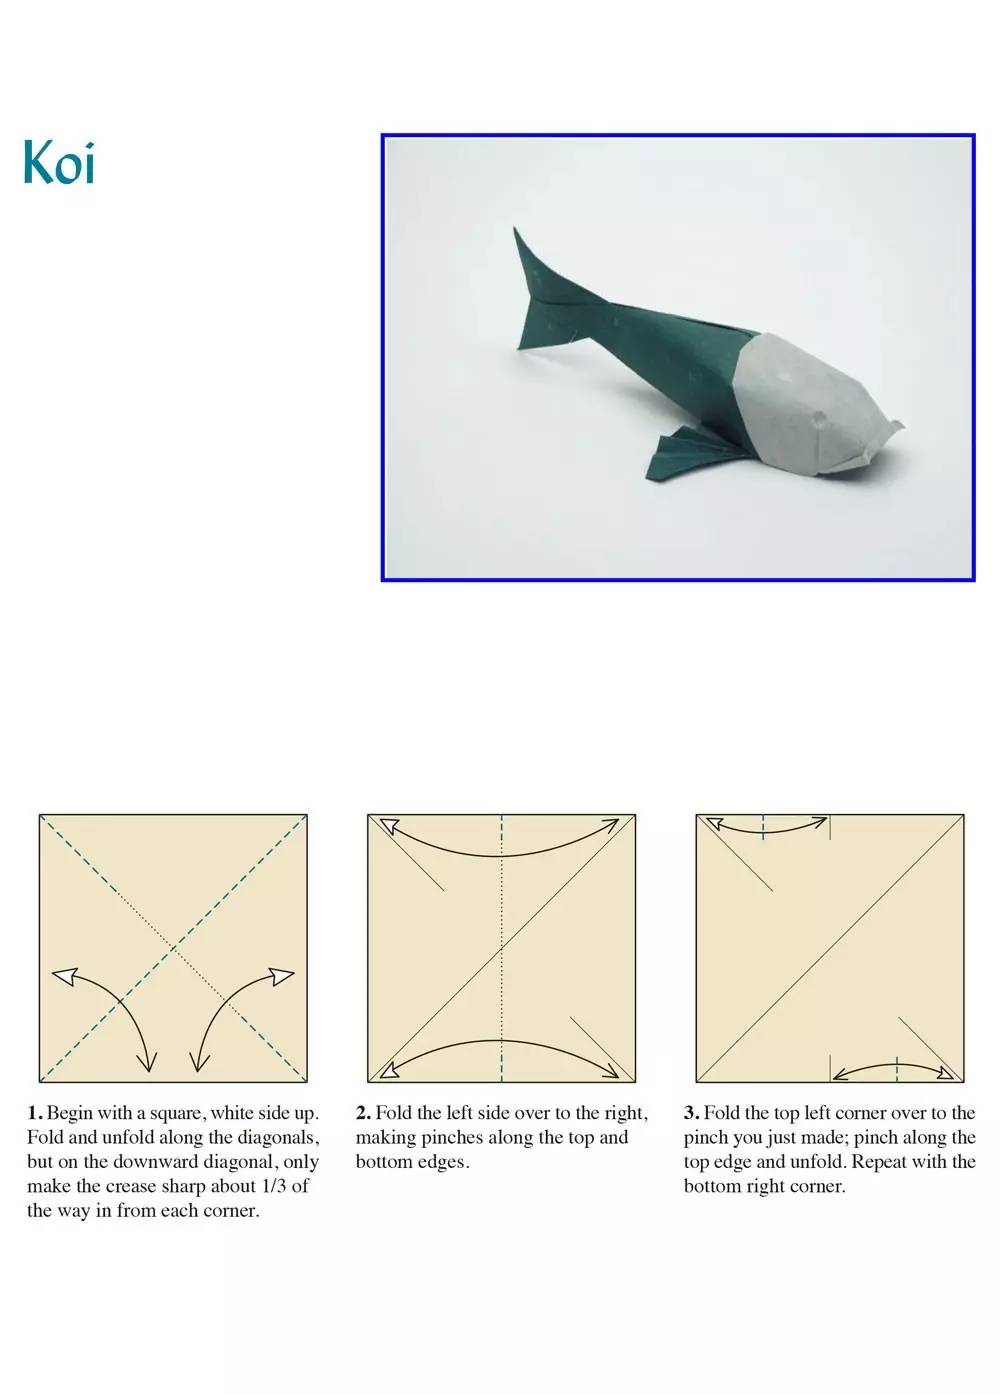 立体鲤鱼折法图片